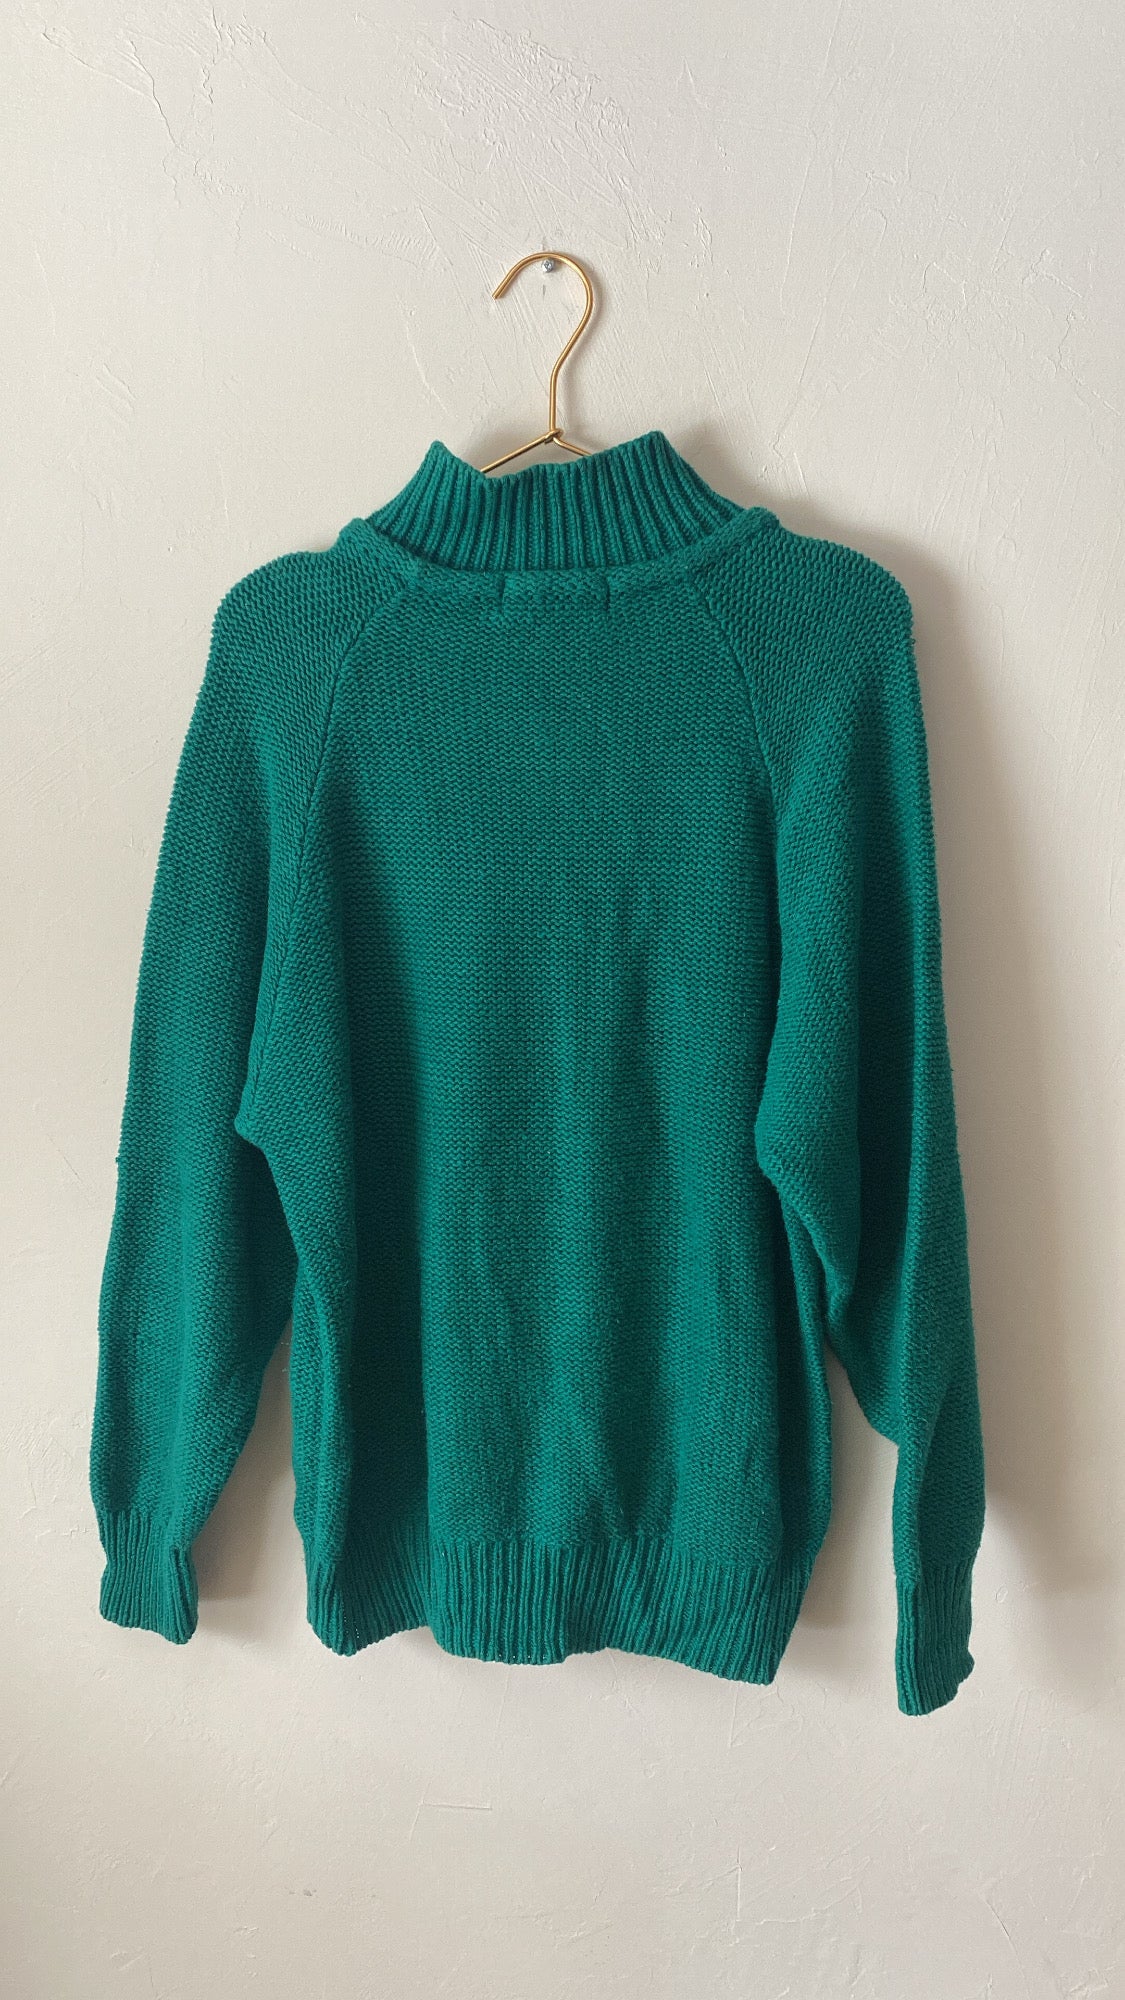 Vintage 117: Very Vintage Gap Knit